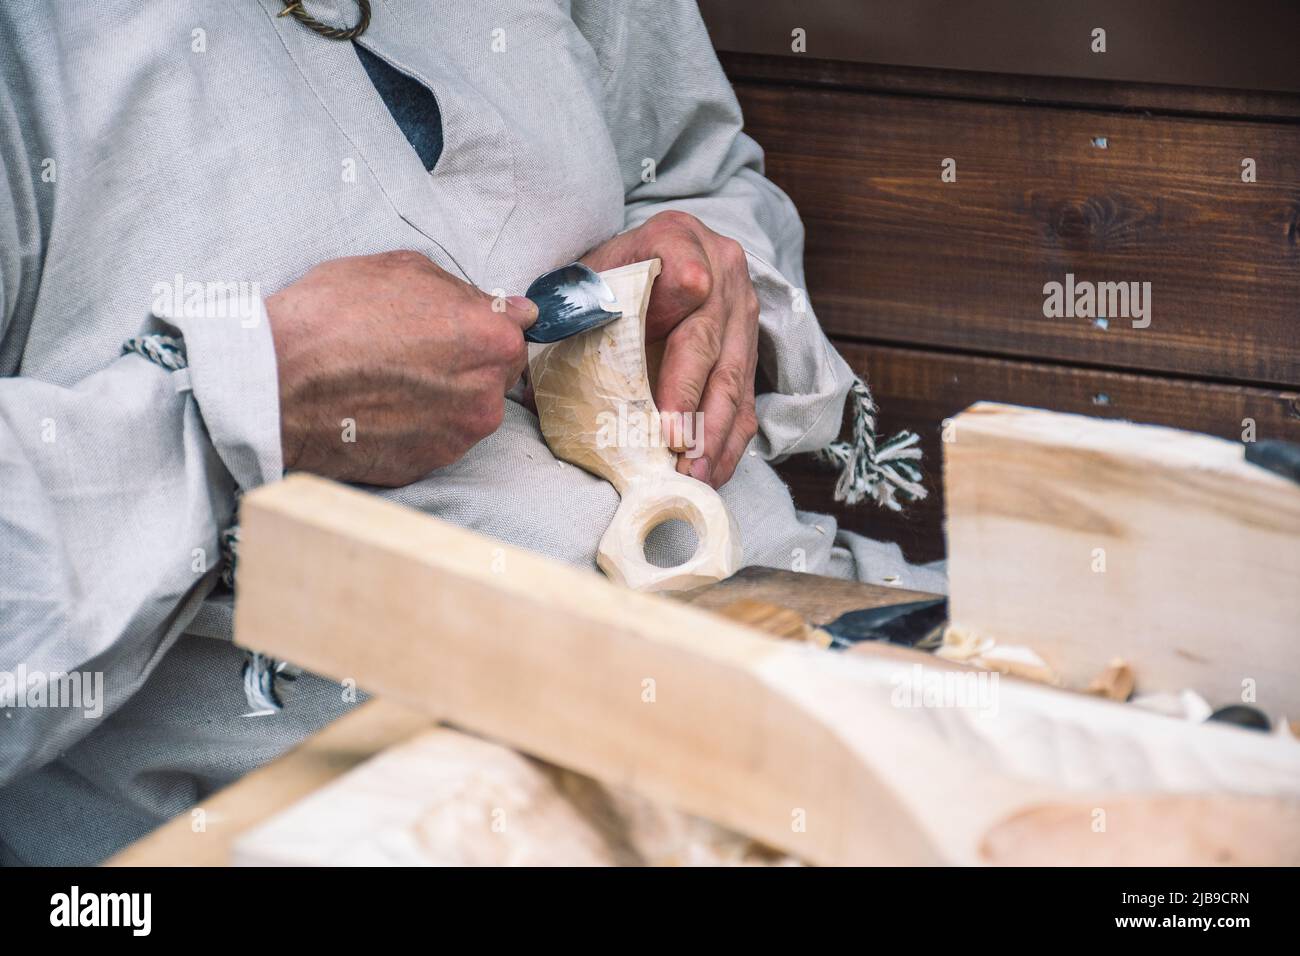 Artigiano lituano in costumi tradizionali intagliando una tazza di legno e vendendo i suoi manufatti e oggetti in legno fatti a mano in un mercato locale di strada Foto Stock